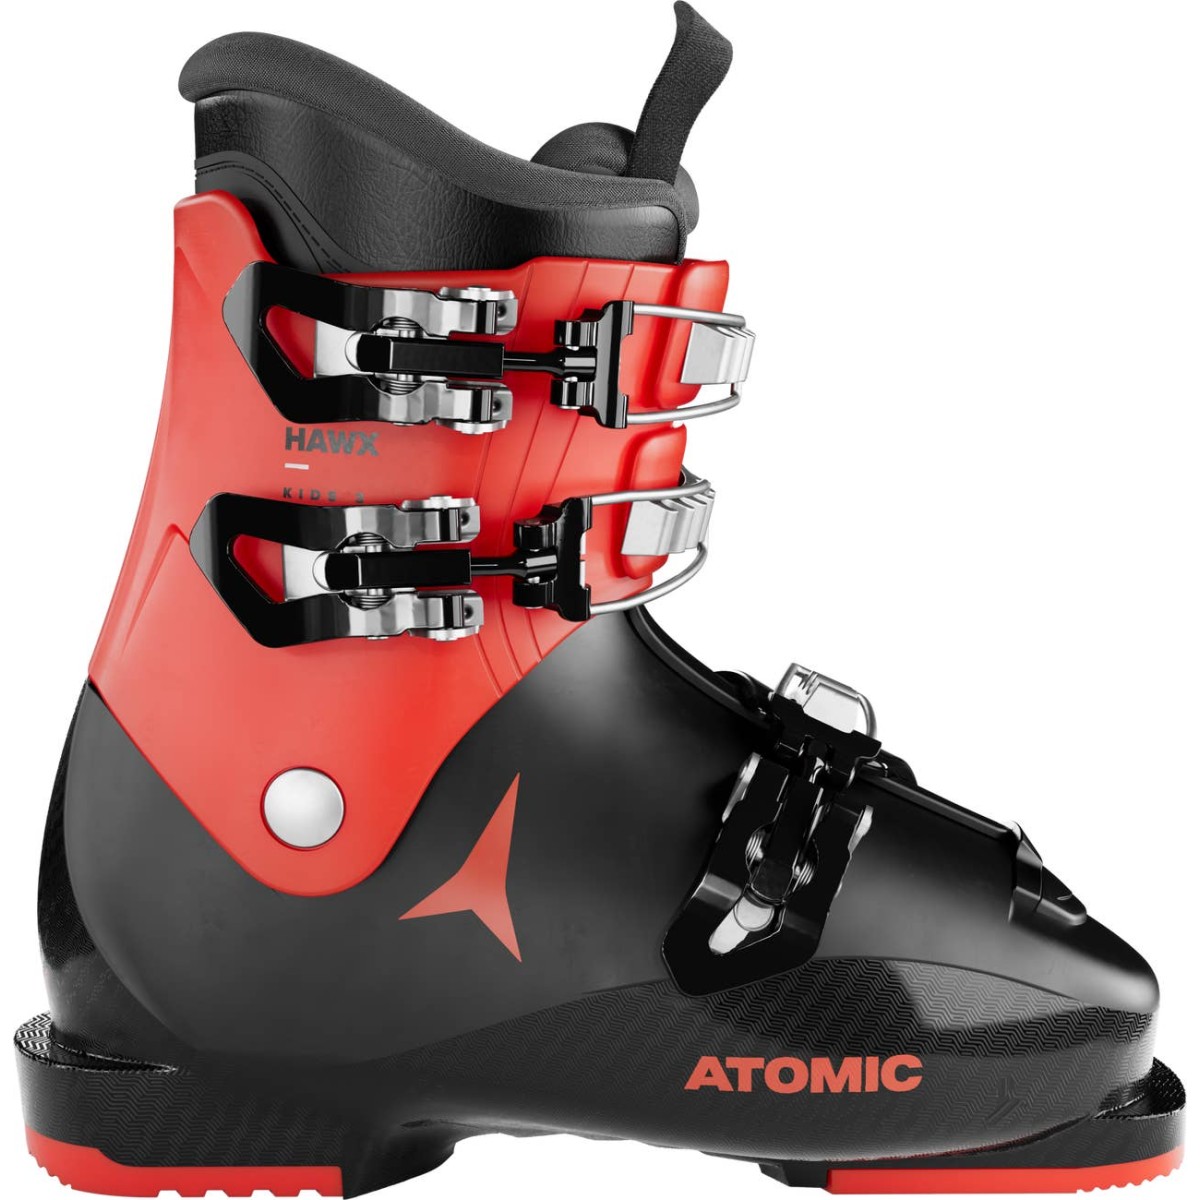 ATOMIC HAWX KIDS 3 alpine ski boots - black/red